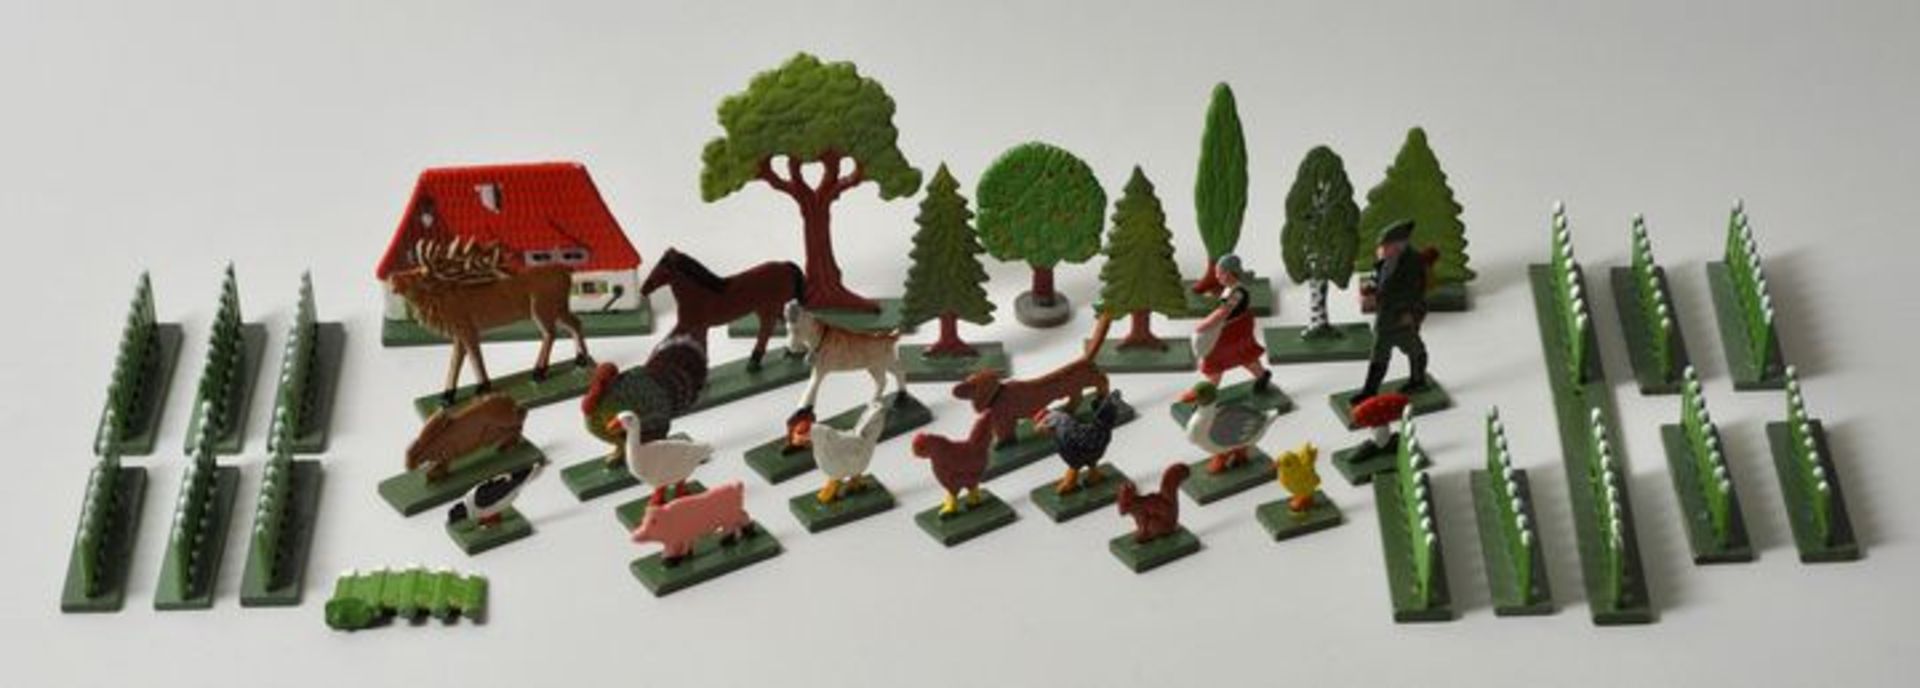 Miniatur-Bauernhof und Wald, Erzgebirge, um 193017 Tiere, ein Jäger, eine Magd, Bauernhaus, 7 Bäume,